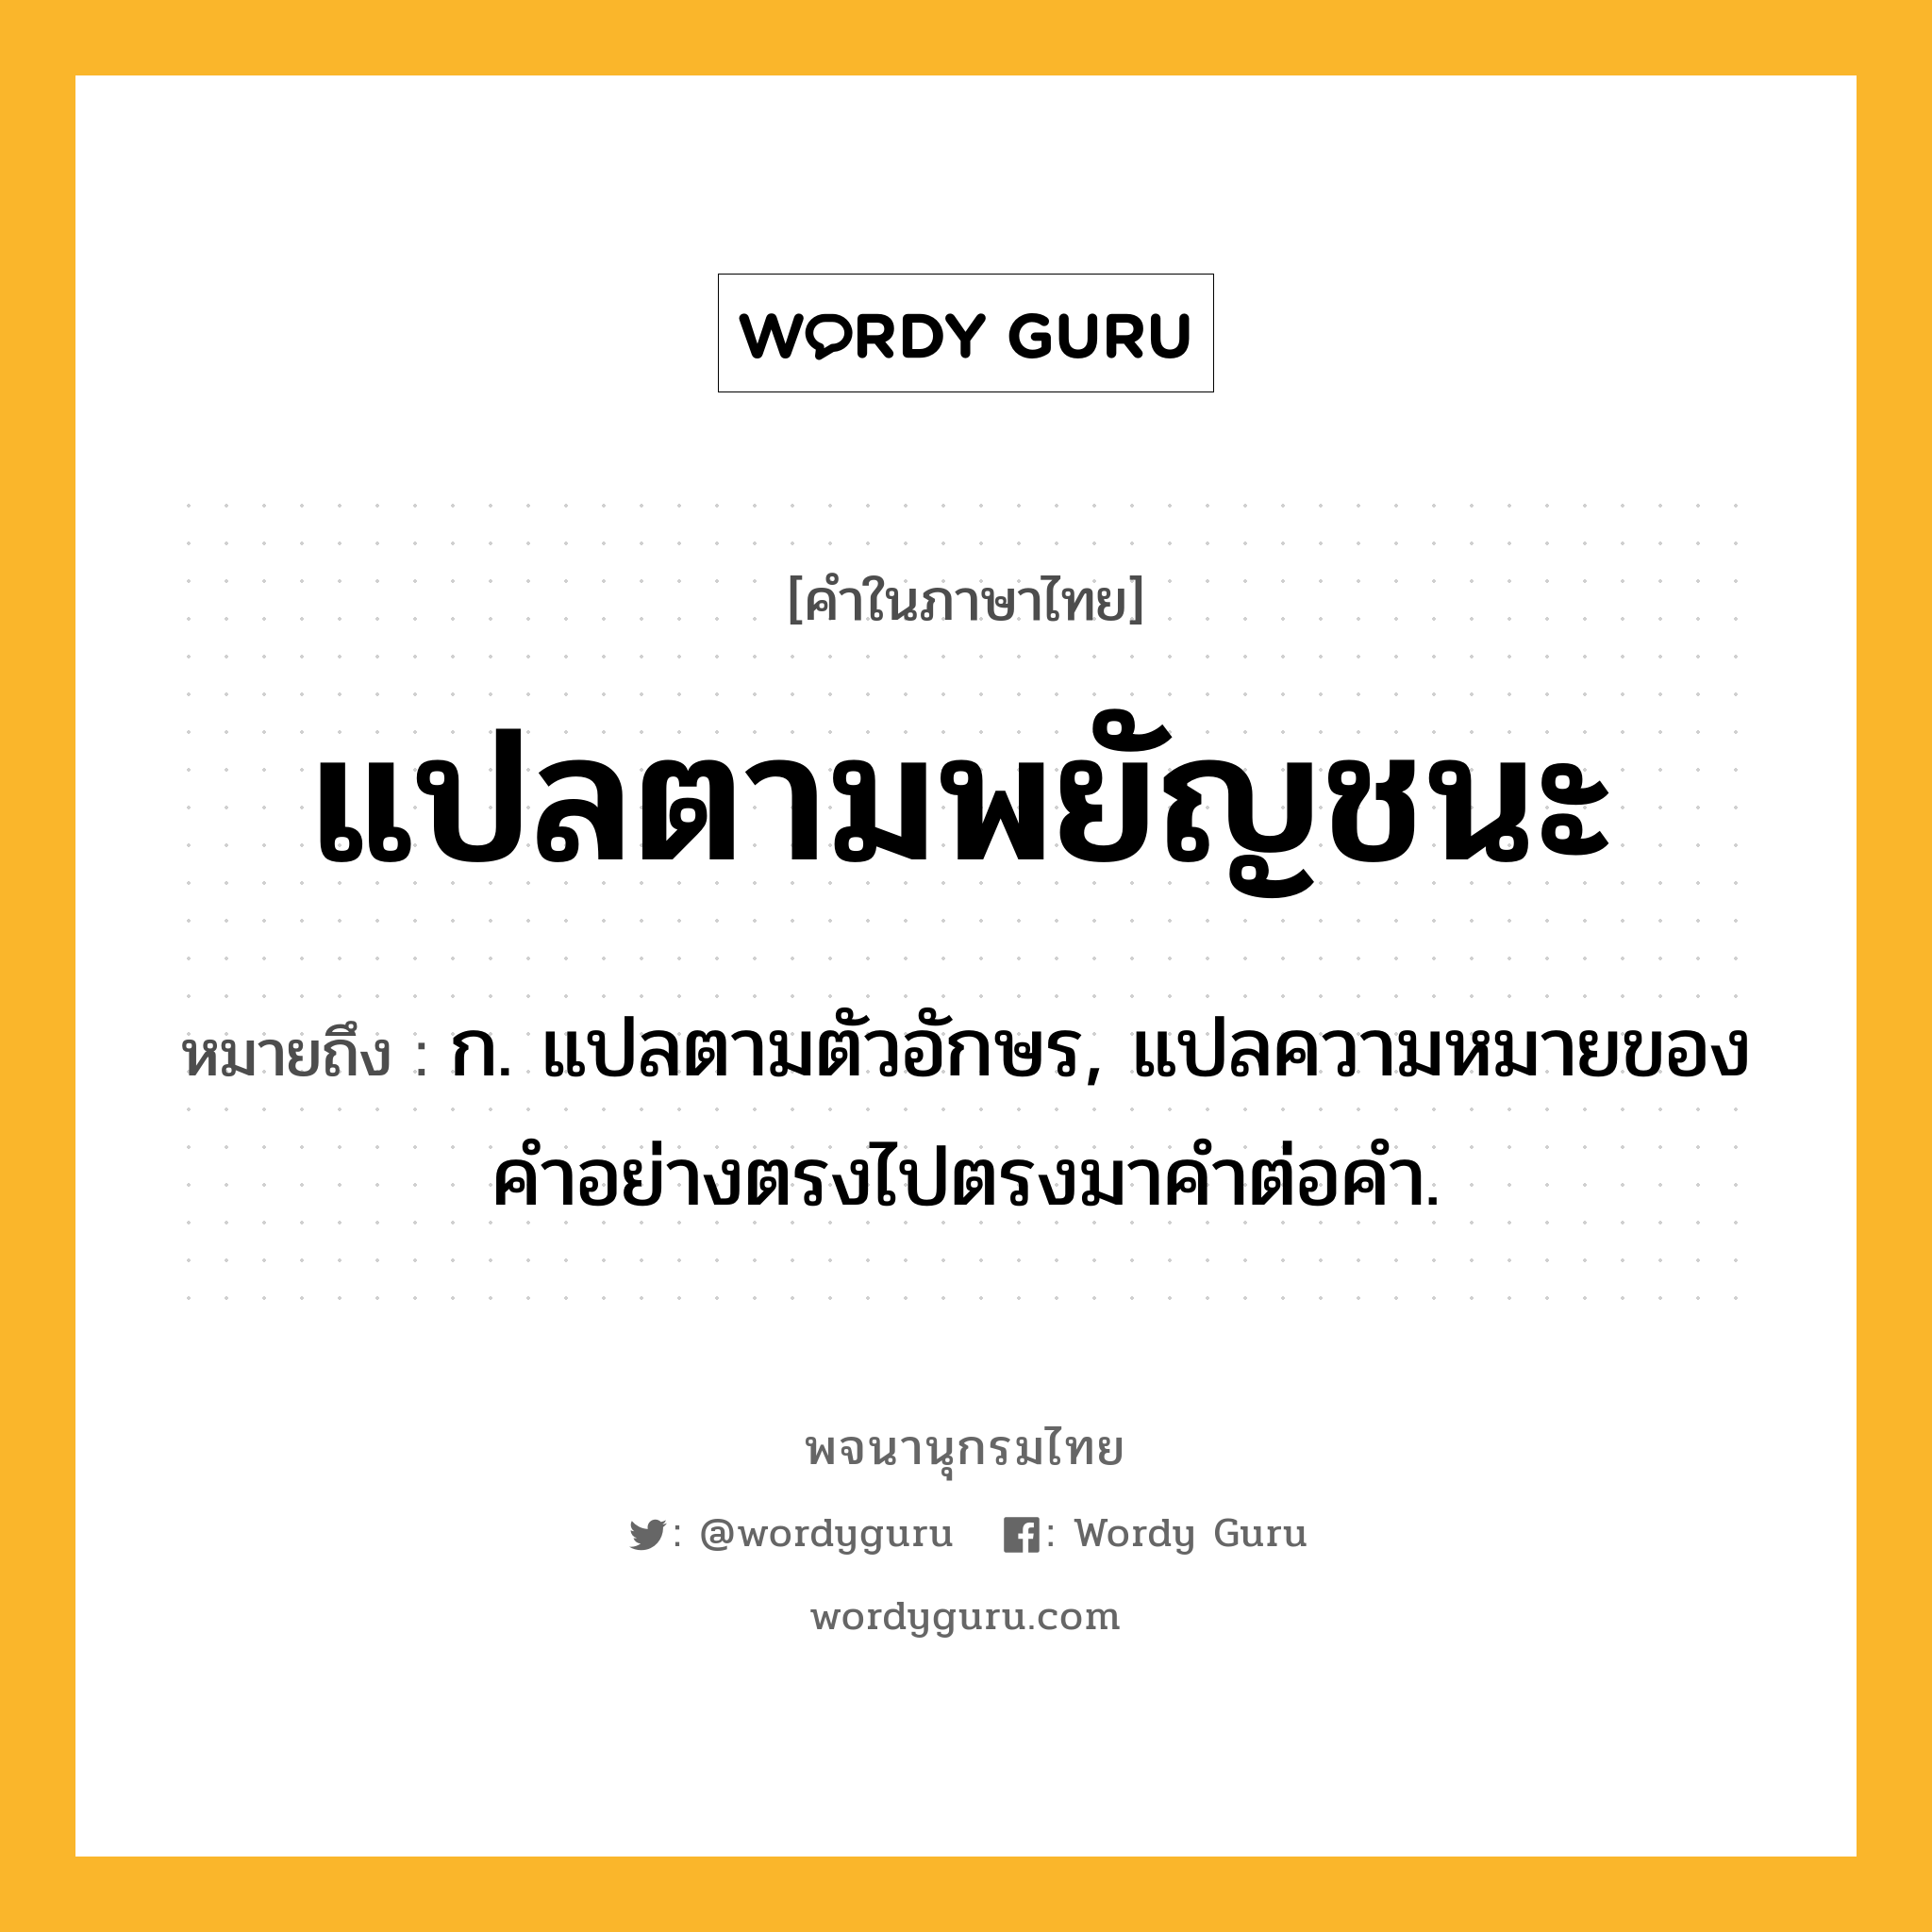 แปลตามพยัญชนะ หมายถึงอะไร?, คำในภาษาไทย แปลตามพยัญชนะ หมายถึง ก. แปลตามตัวอักษร, แปลความหมายของคําอย่างตรงไปตรงมาคําต่อคํา.